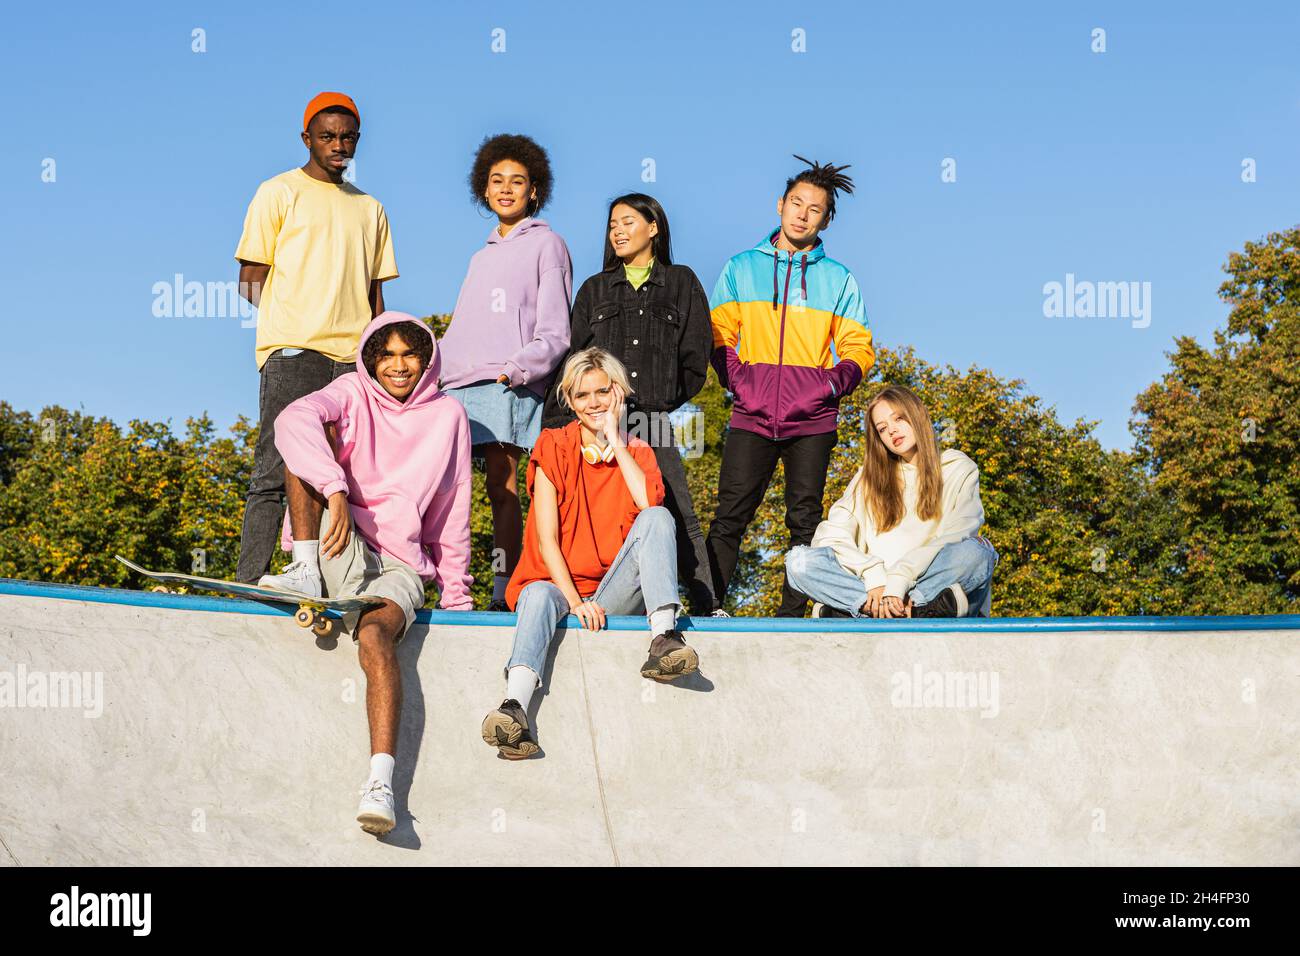 Gruppo multiculturale di giovani amici che si legano all'aperto e divertirsi - ragazzi alla moda e cool che si riuniscono al parco urbano skate Foto Stock